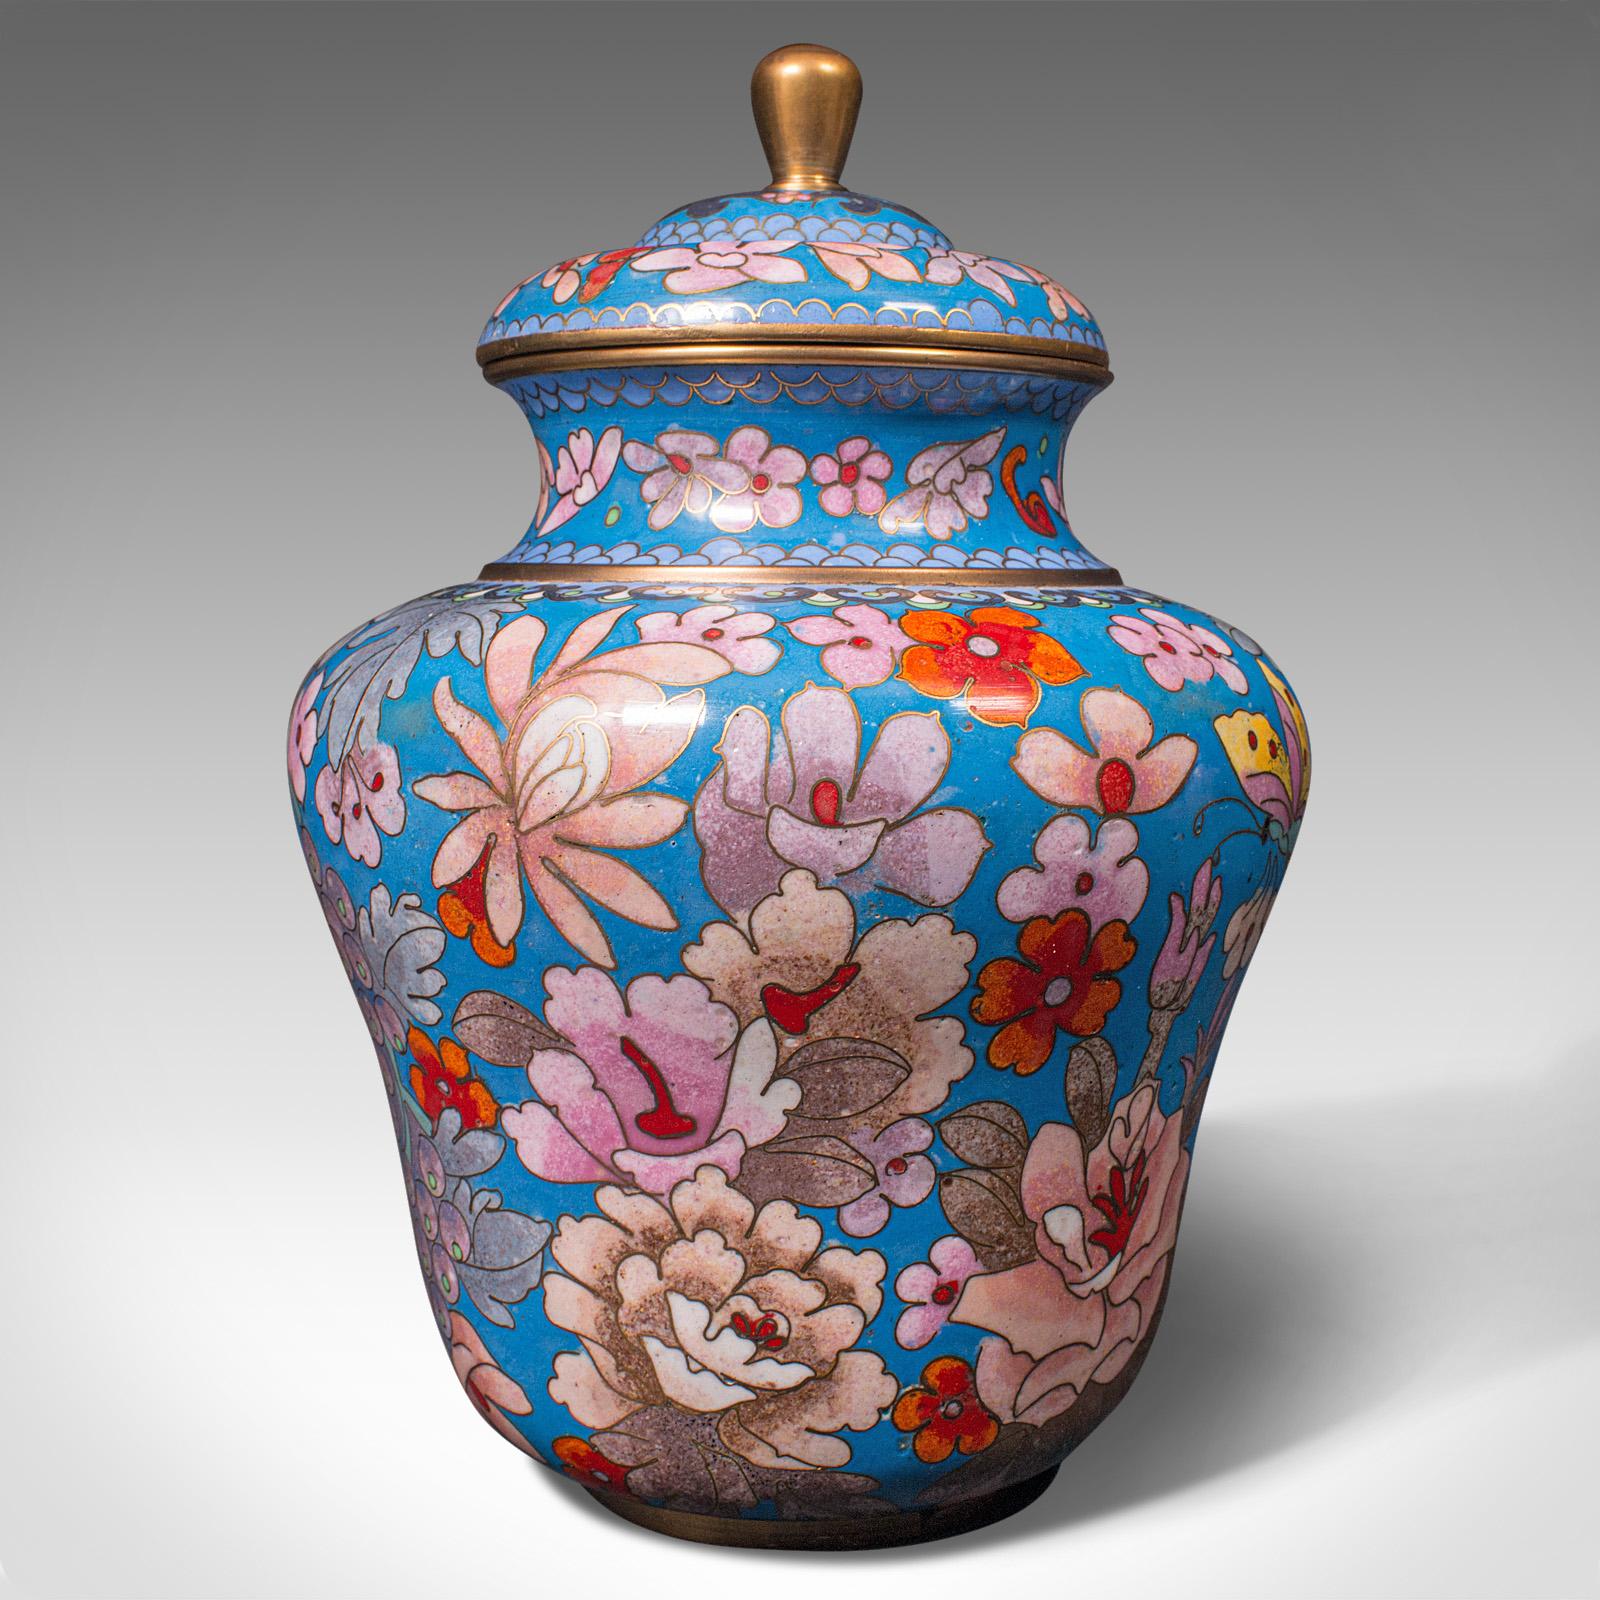 Pair of Antique Cloisonne Spice Jars, English Ceramic, Decorative Pot, Victorian For Sale 2